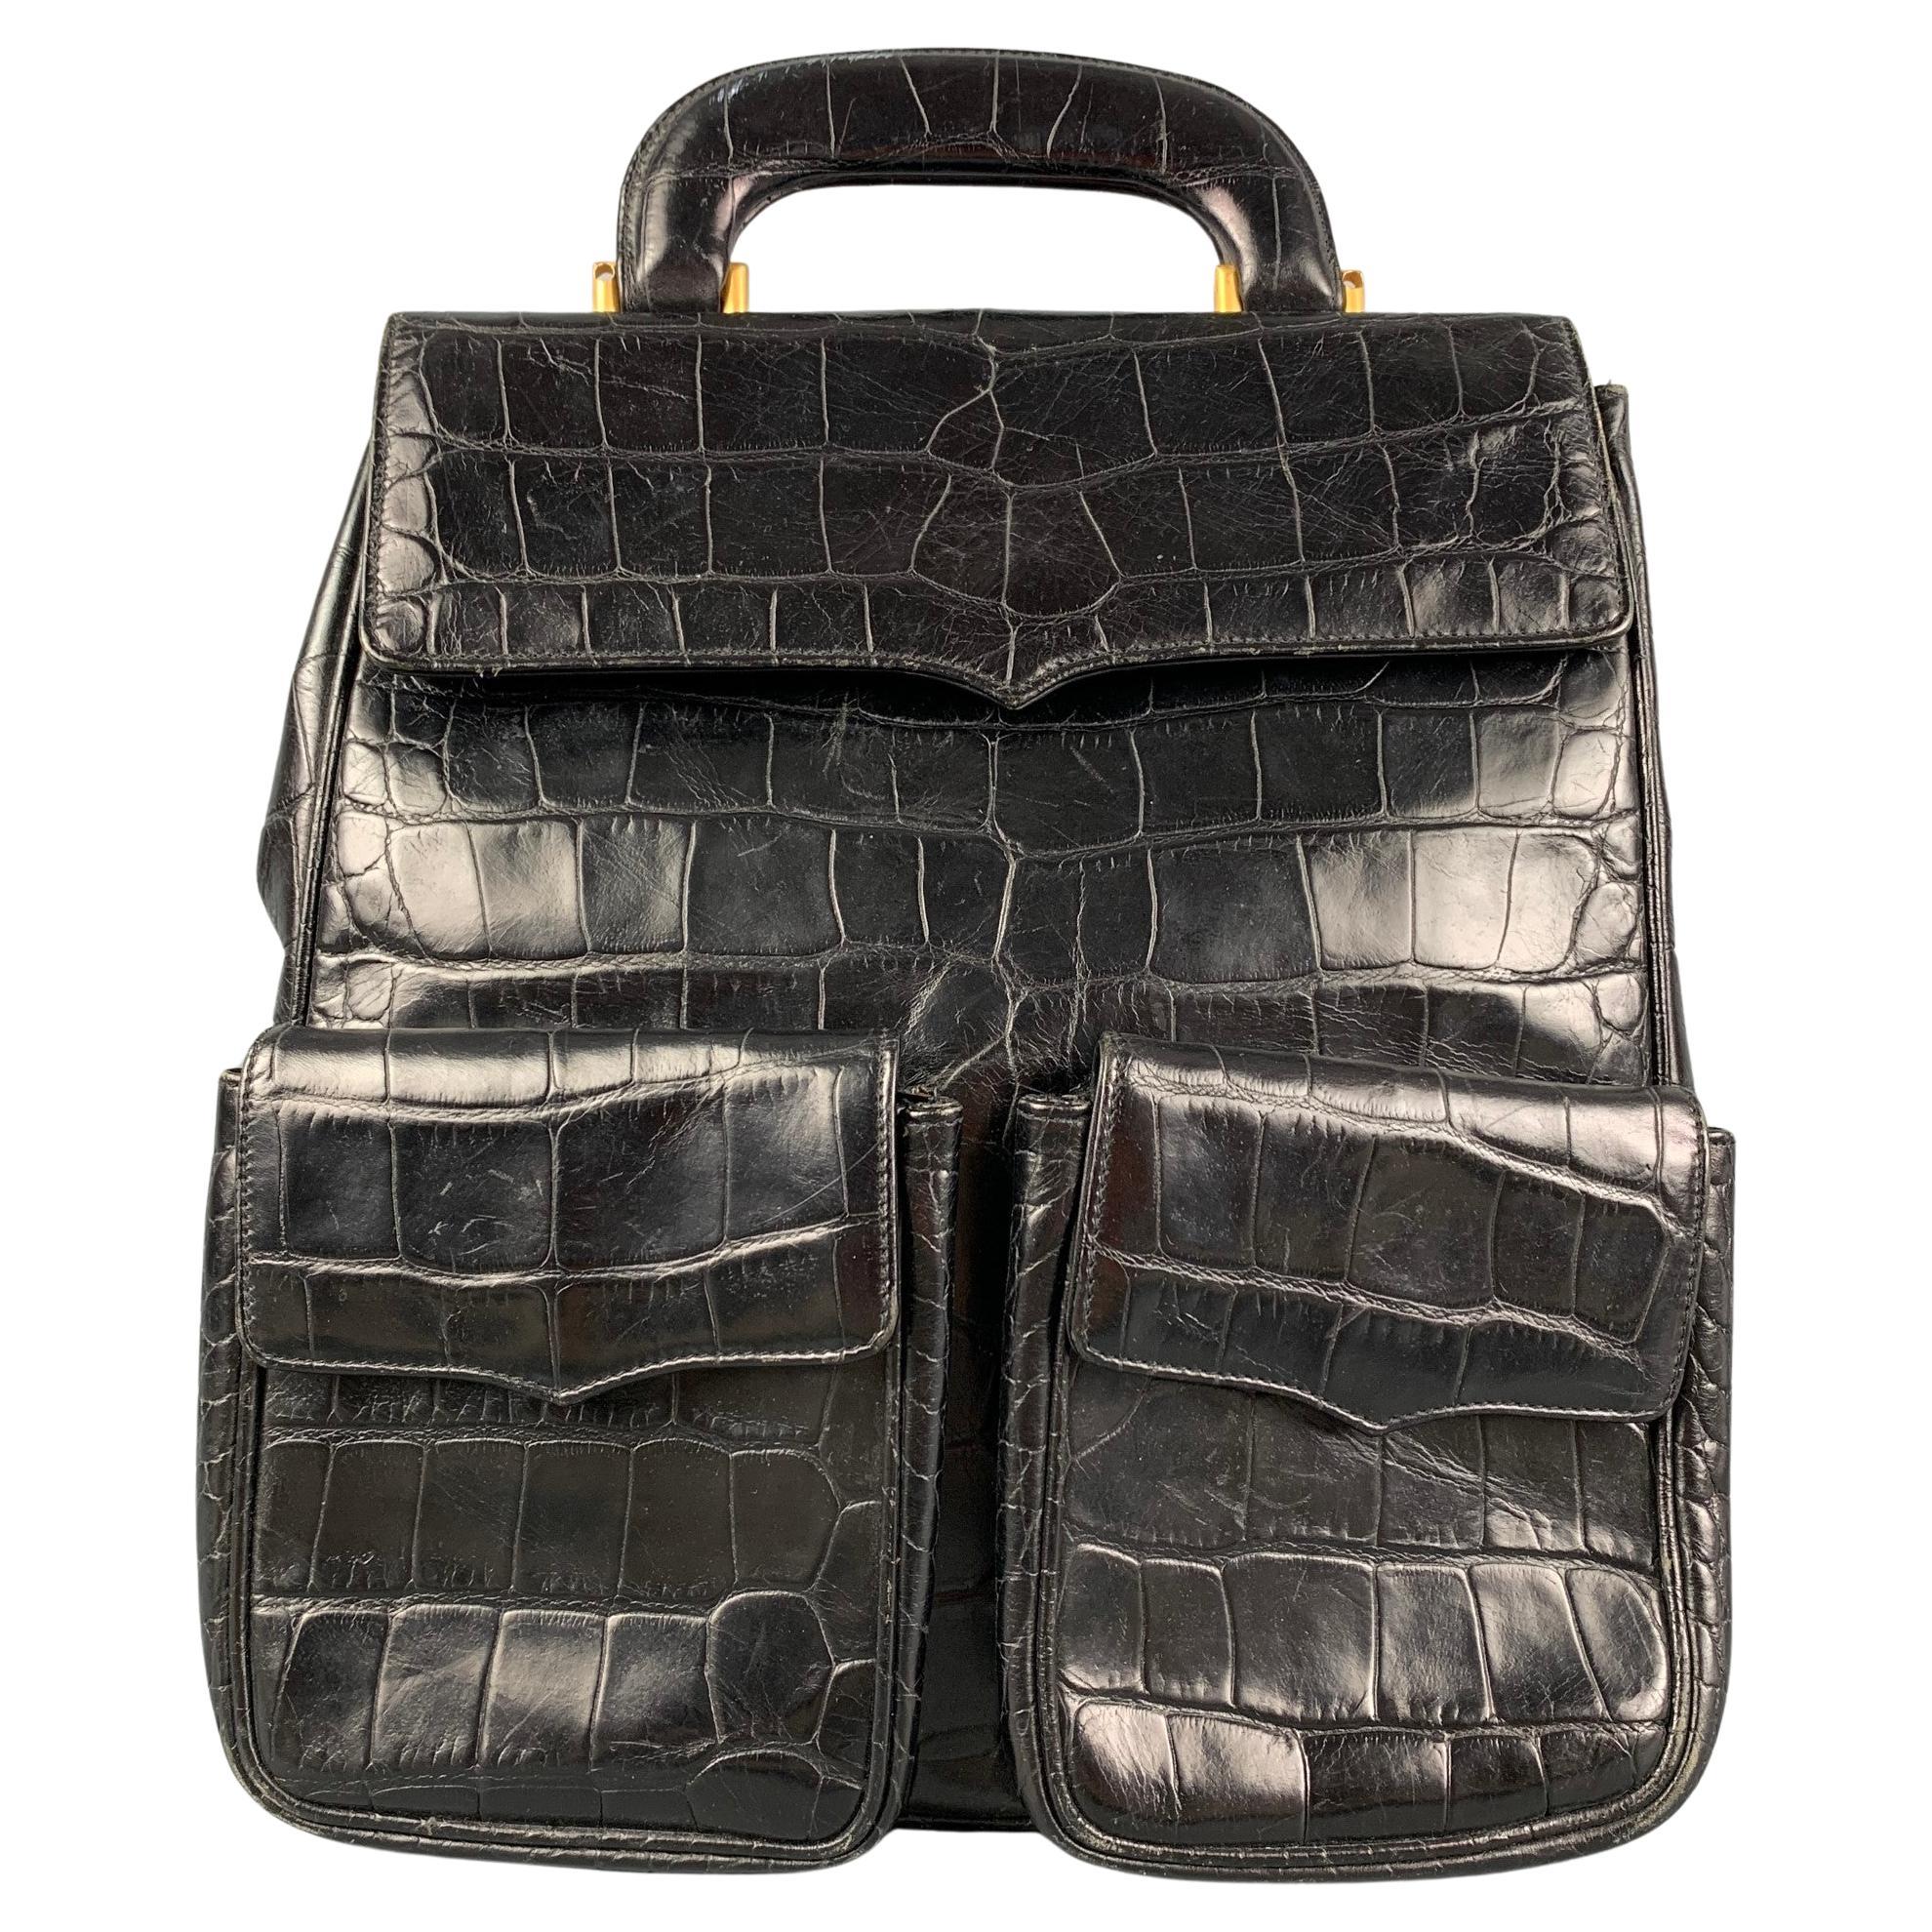 Vintage ANDREA PFISTER Black Alligator Leather Backpack